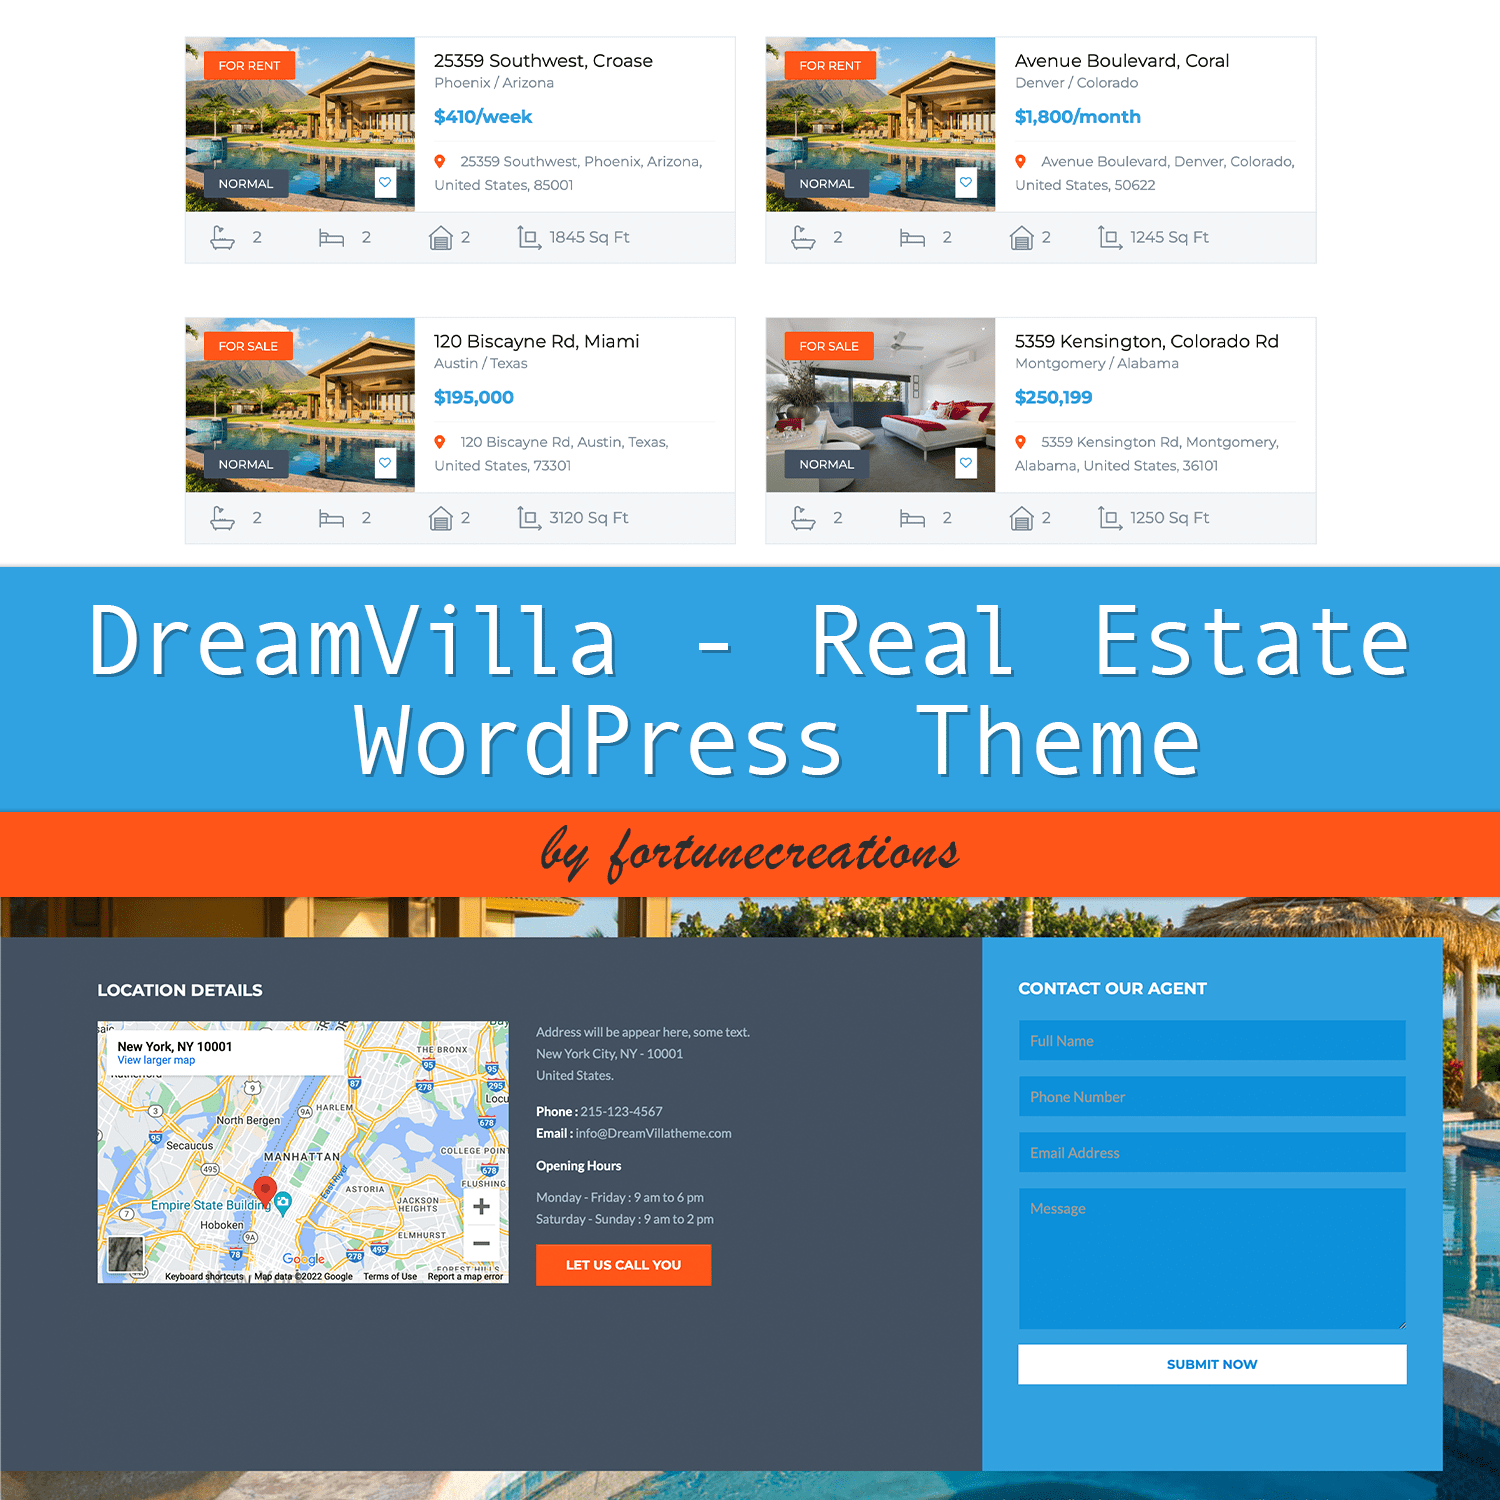 DreamVilla - Real Estate WordPress Theme Cover.